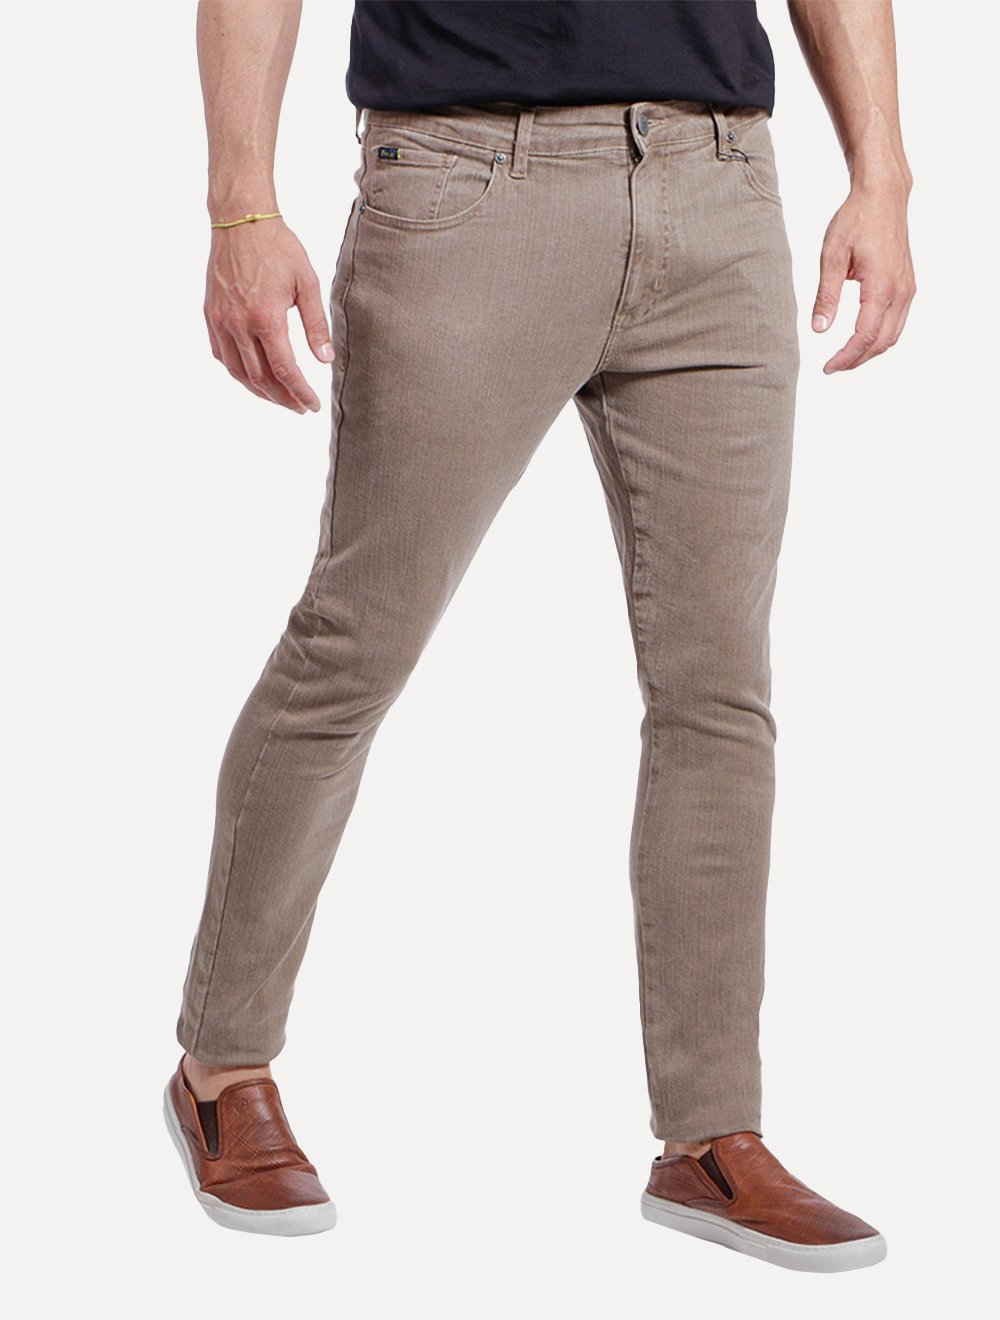 Calça Ralph Lauren Jeans Masculina Slim Stretch Stoned Caqui